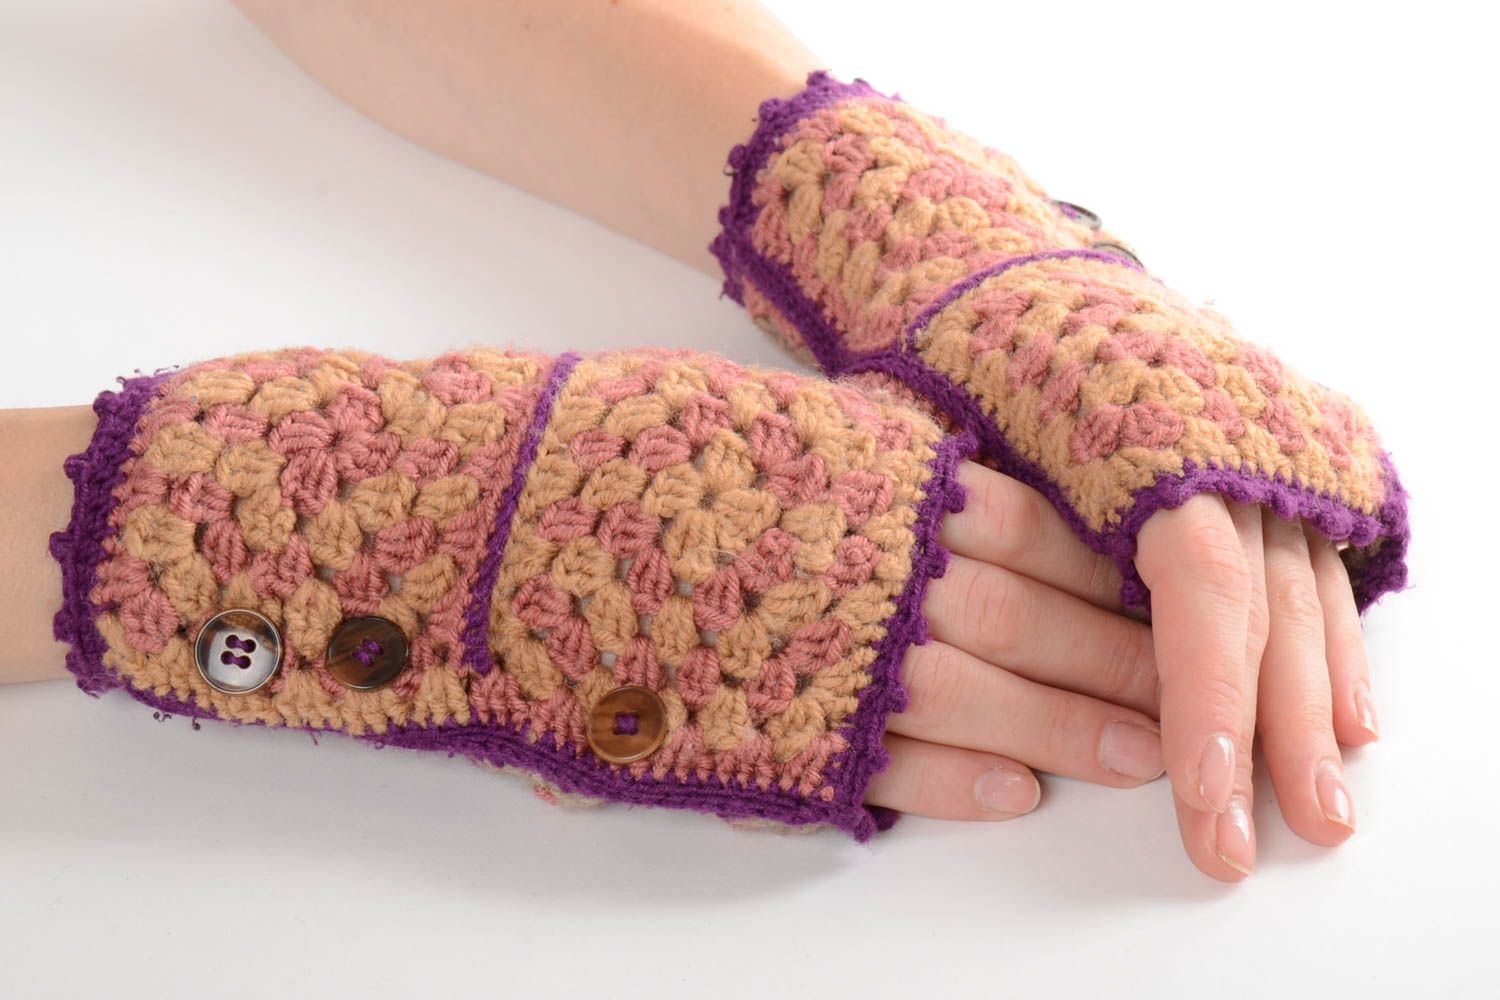 Beautiful handmade crochet mittens crochet ideas winter accessories gift ideas photo 1